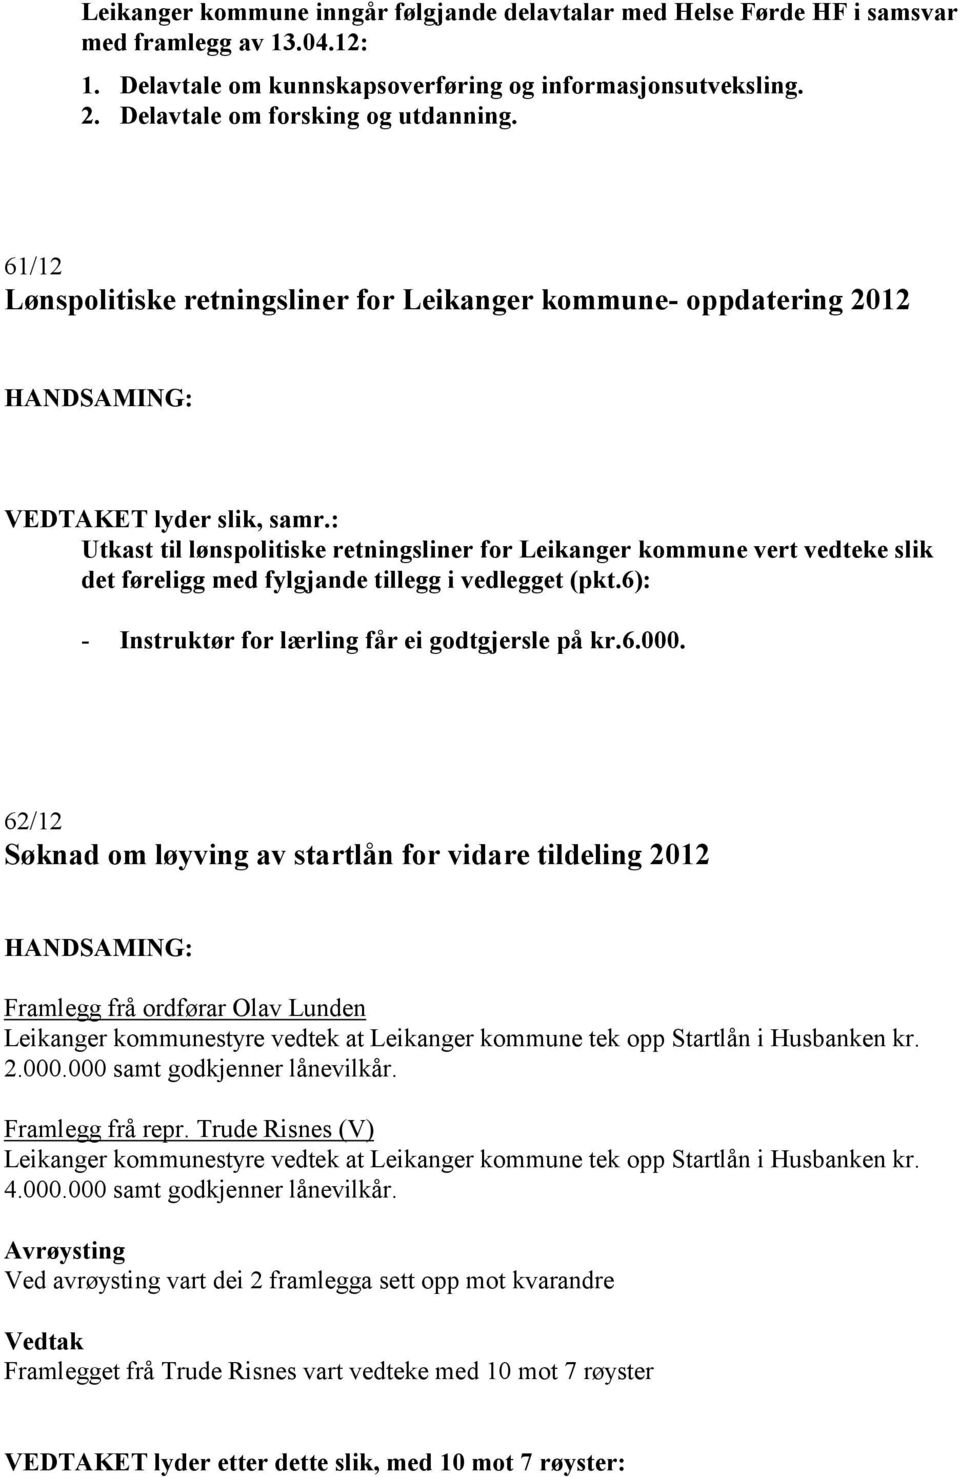 61/12 Lønspolitiske retningsliner for Leikanger kommune- oppdatering 2012 Utkast til lønspolitiske retningsliner for Leikanger kommune vert vedteke slik det føreligg med fylgjande tillegg i vedlegget